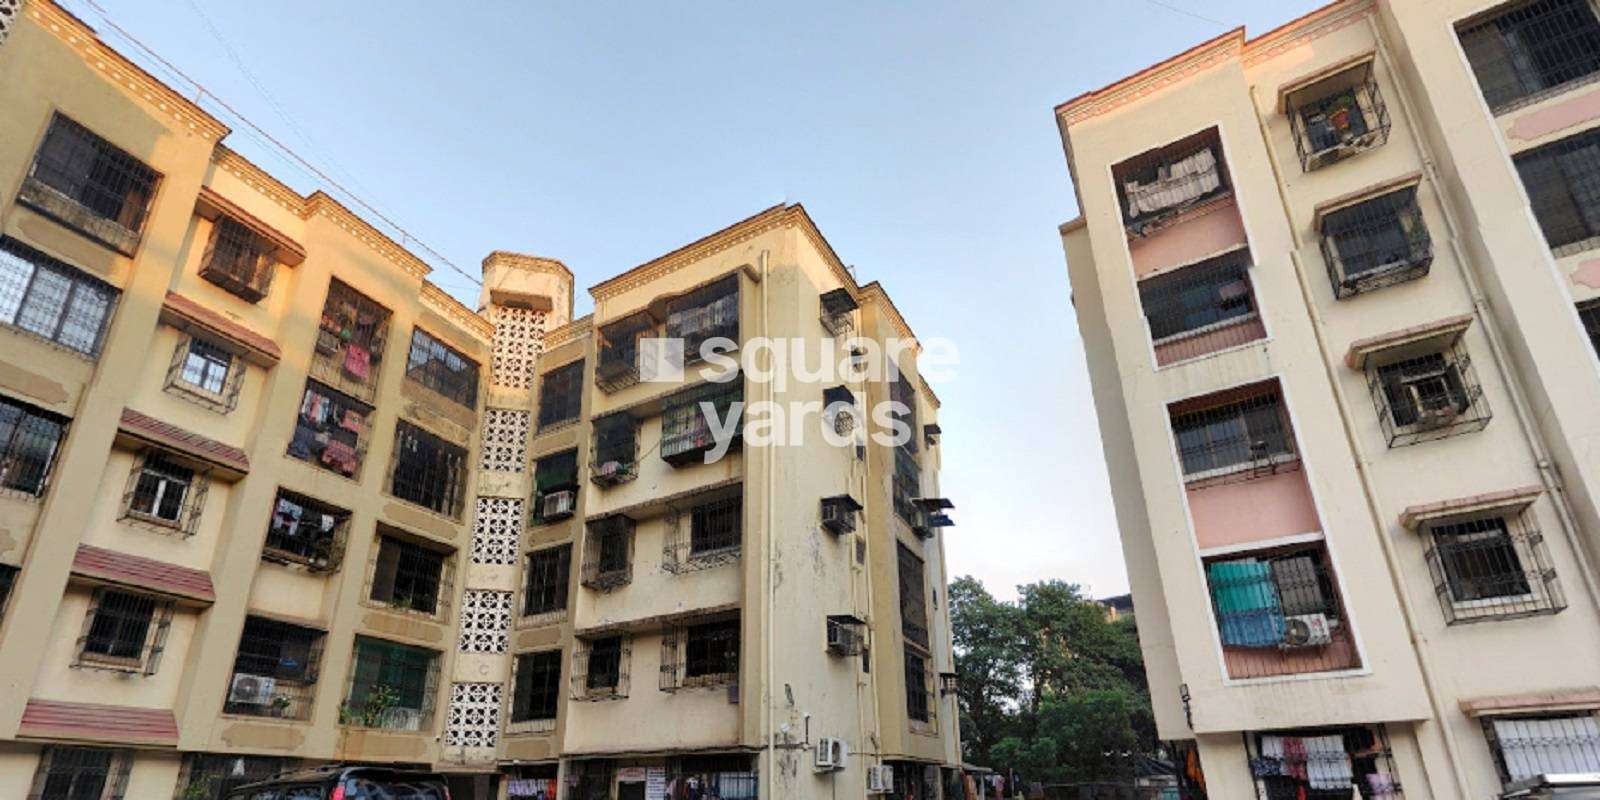 Raja Ramdev Park Apartment Cover Image